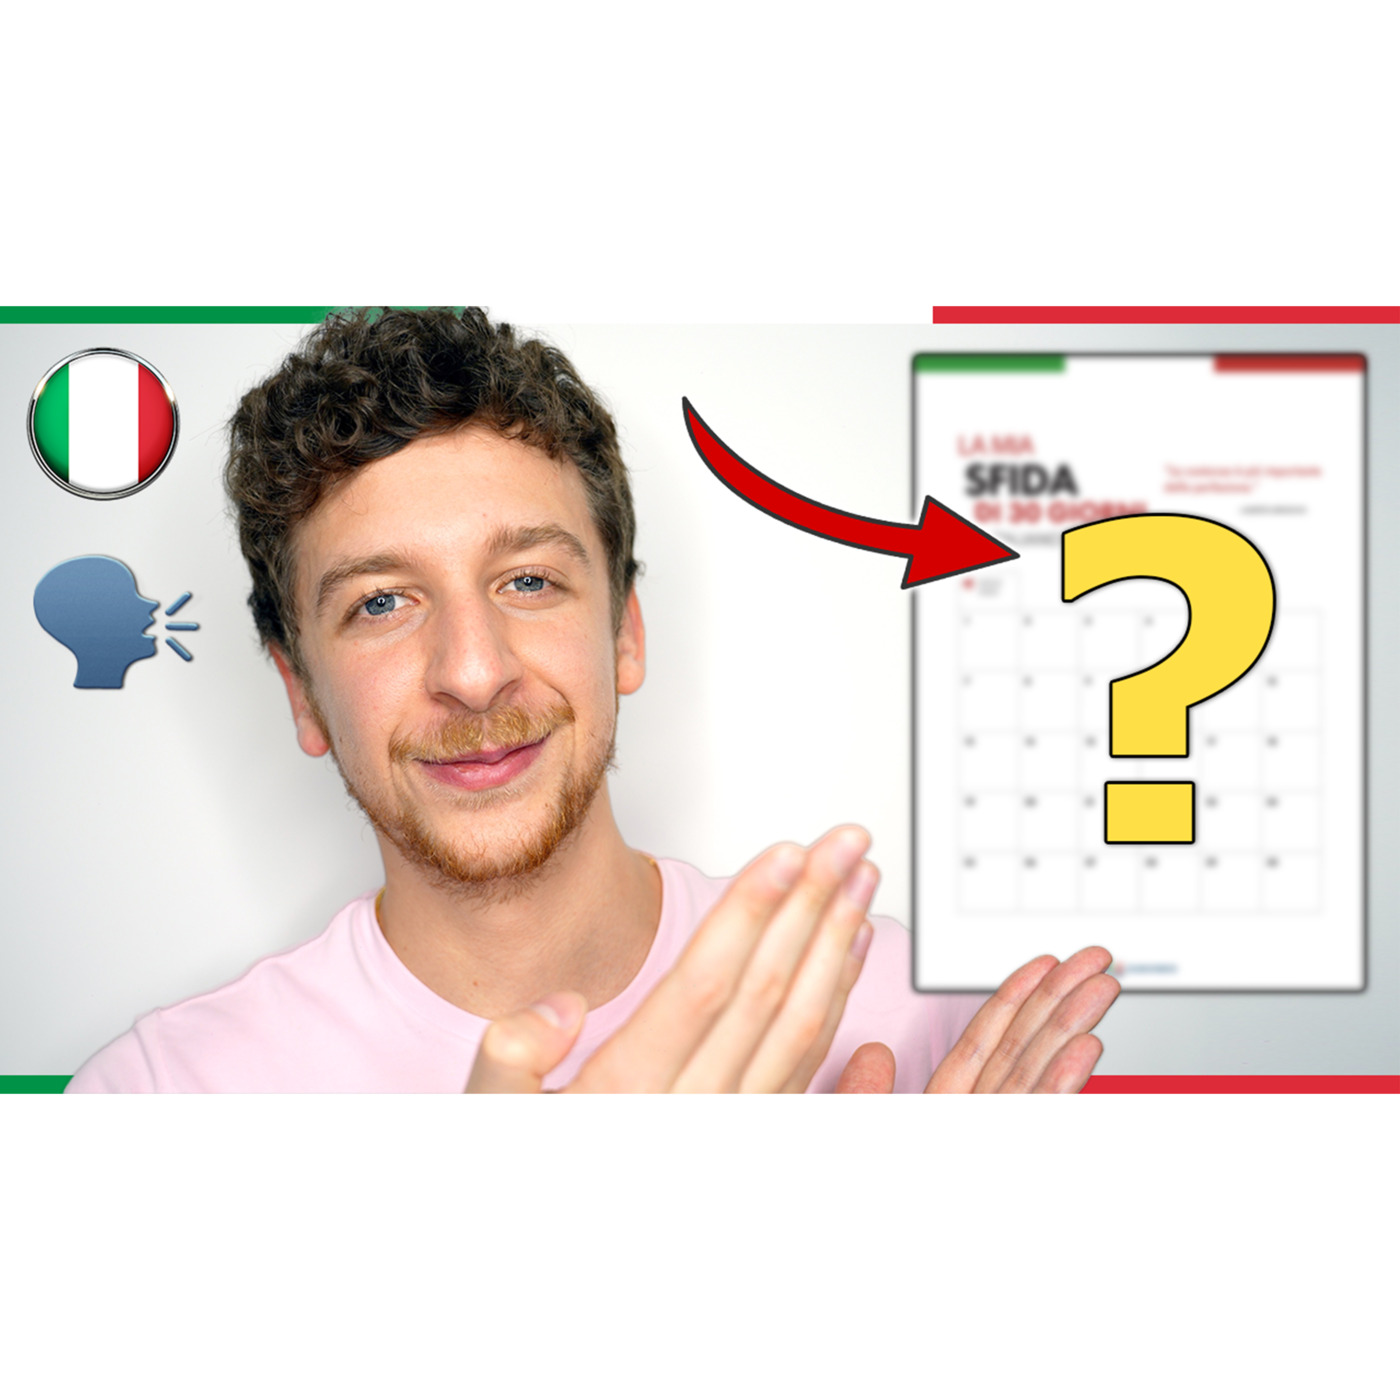 Episode 531: Arriva a PARLARE l’Italiano Usando Questo Foglio | Imparare l’Italiano